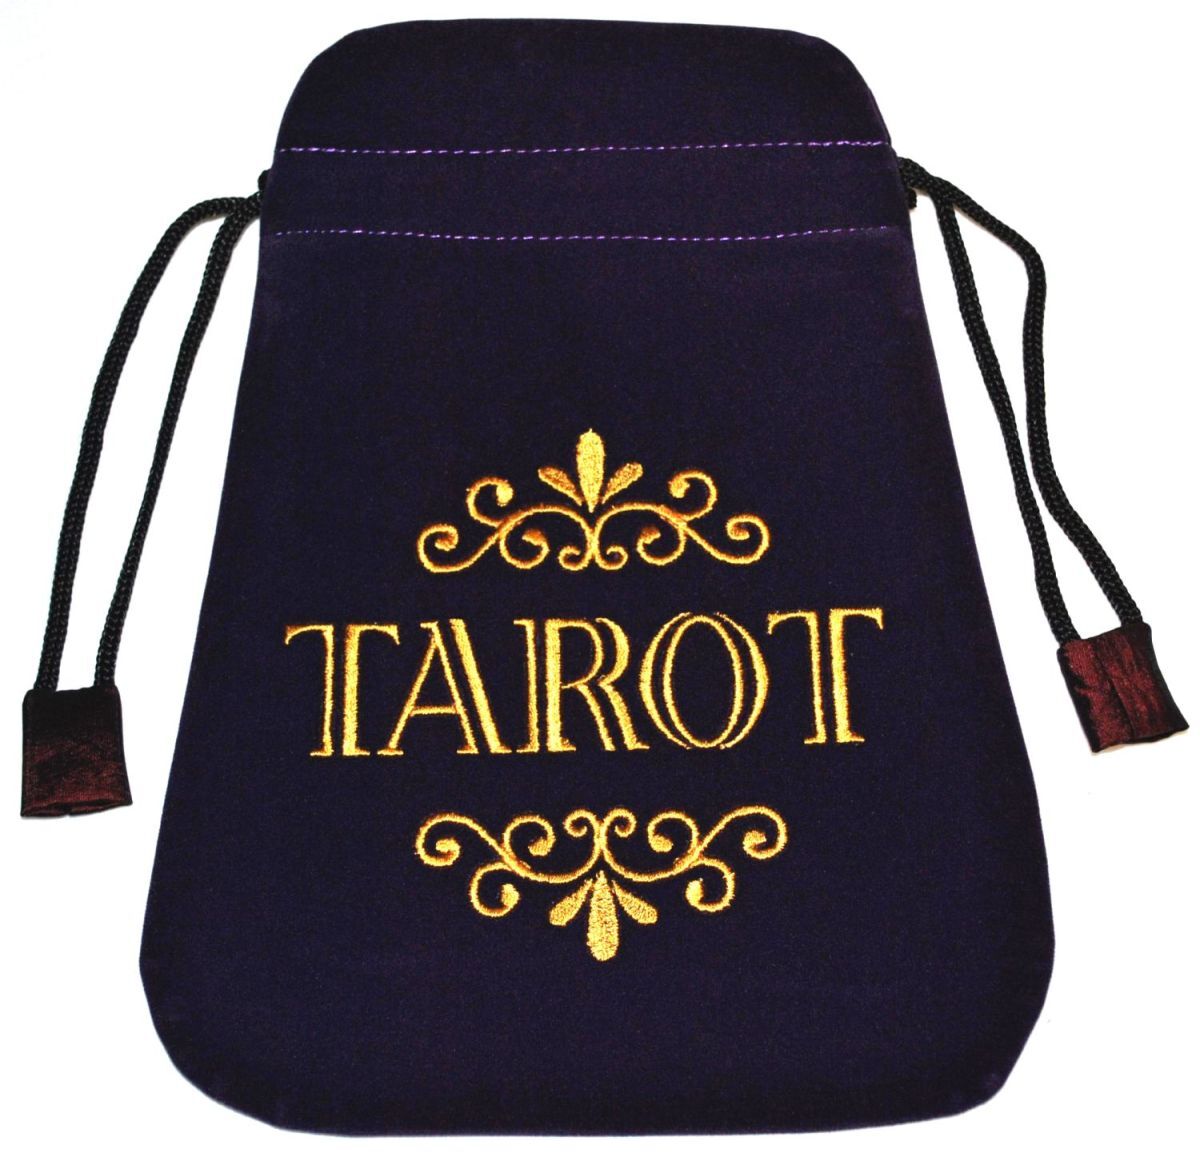 

Мешочек для карт Таро "Tarot"